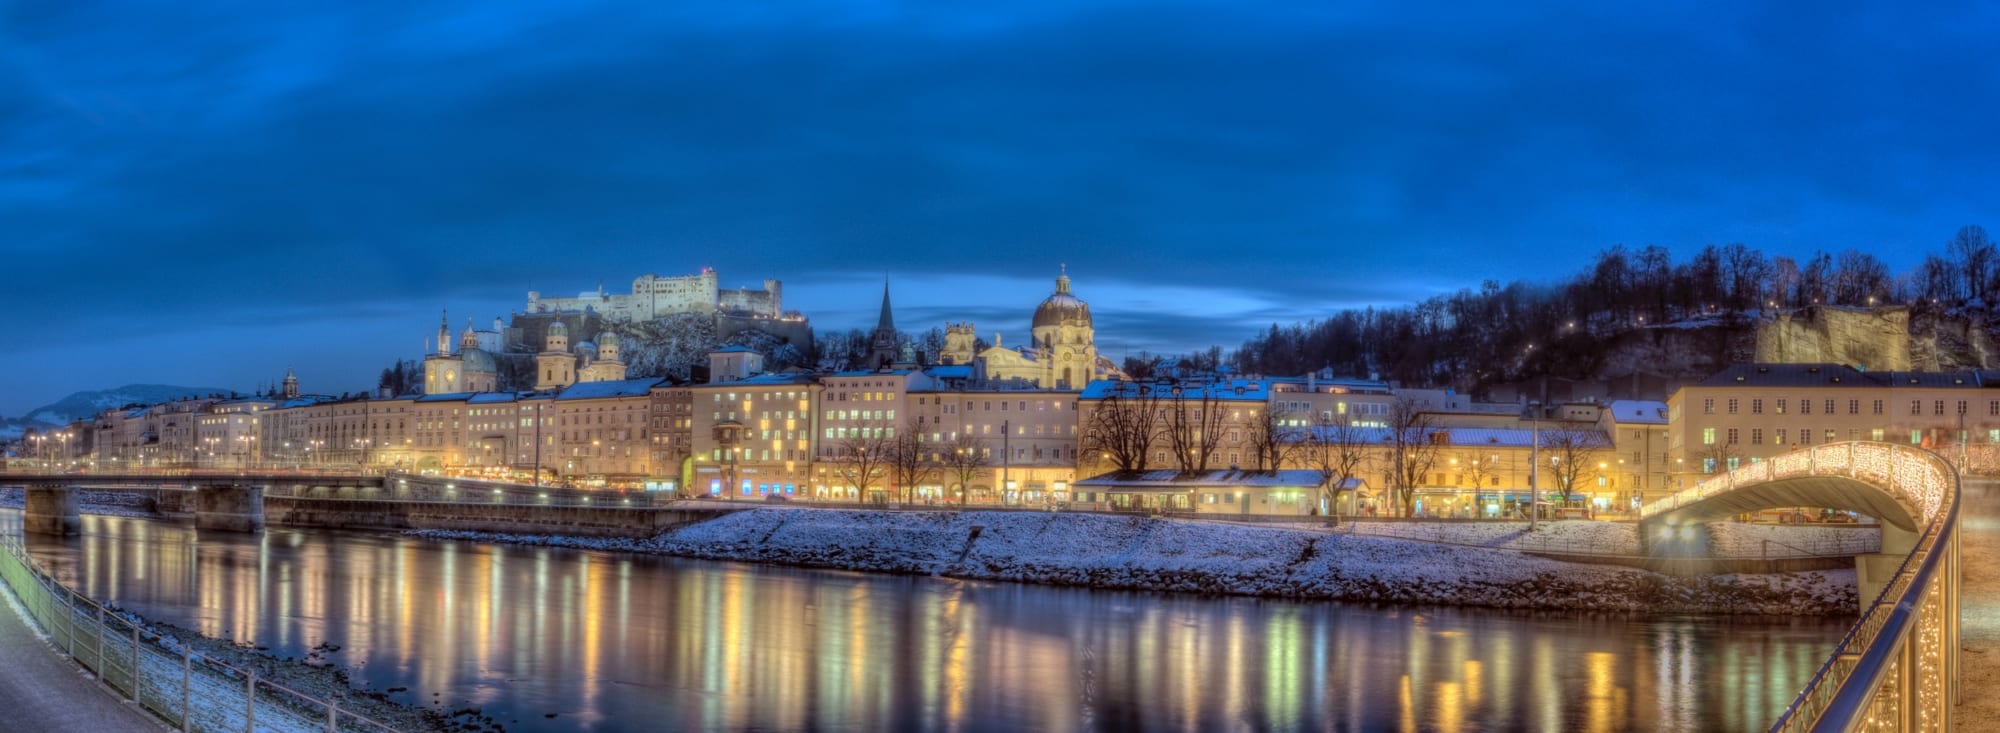 Blick auf die Altstadt von Salzburg im Winter/Advent (c) Tourismus Salzburg, R. Zauner